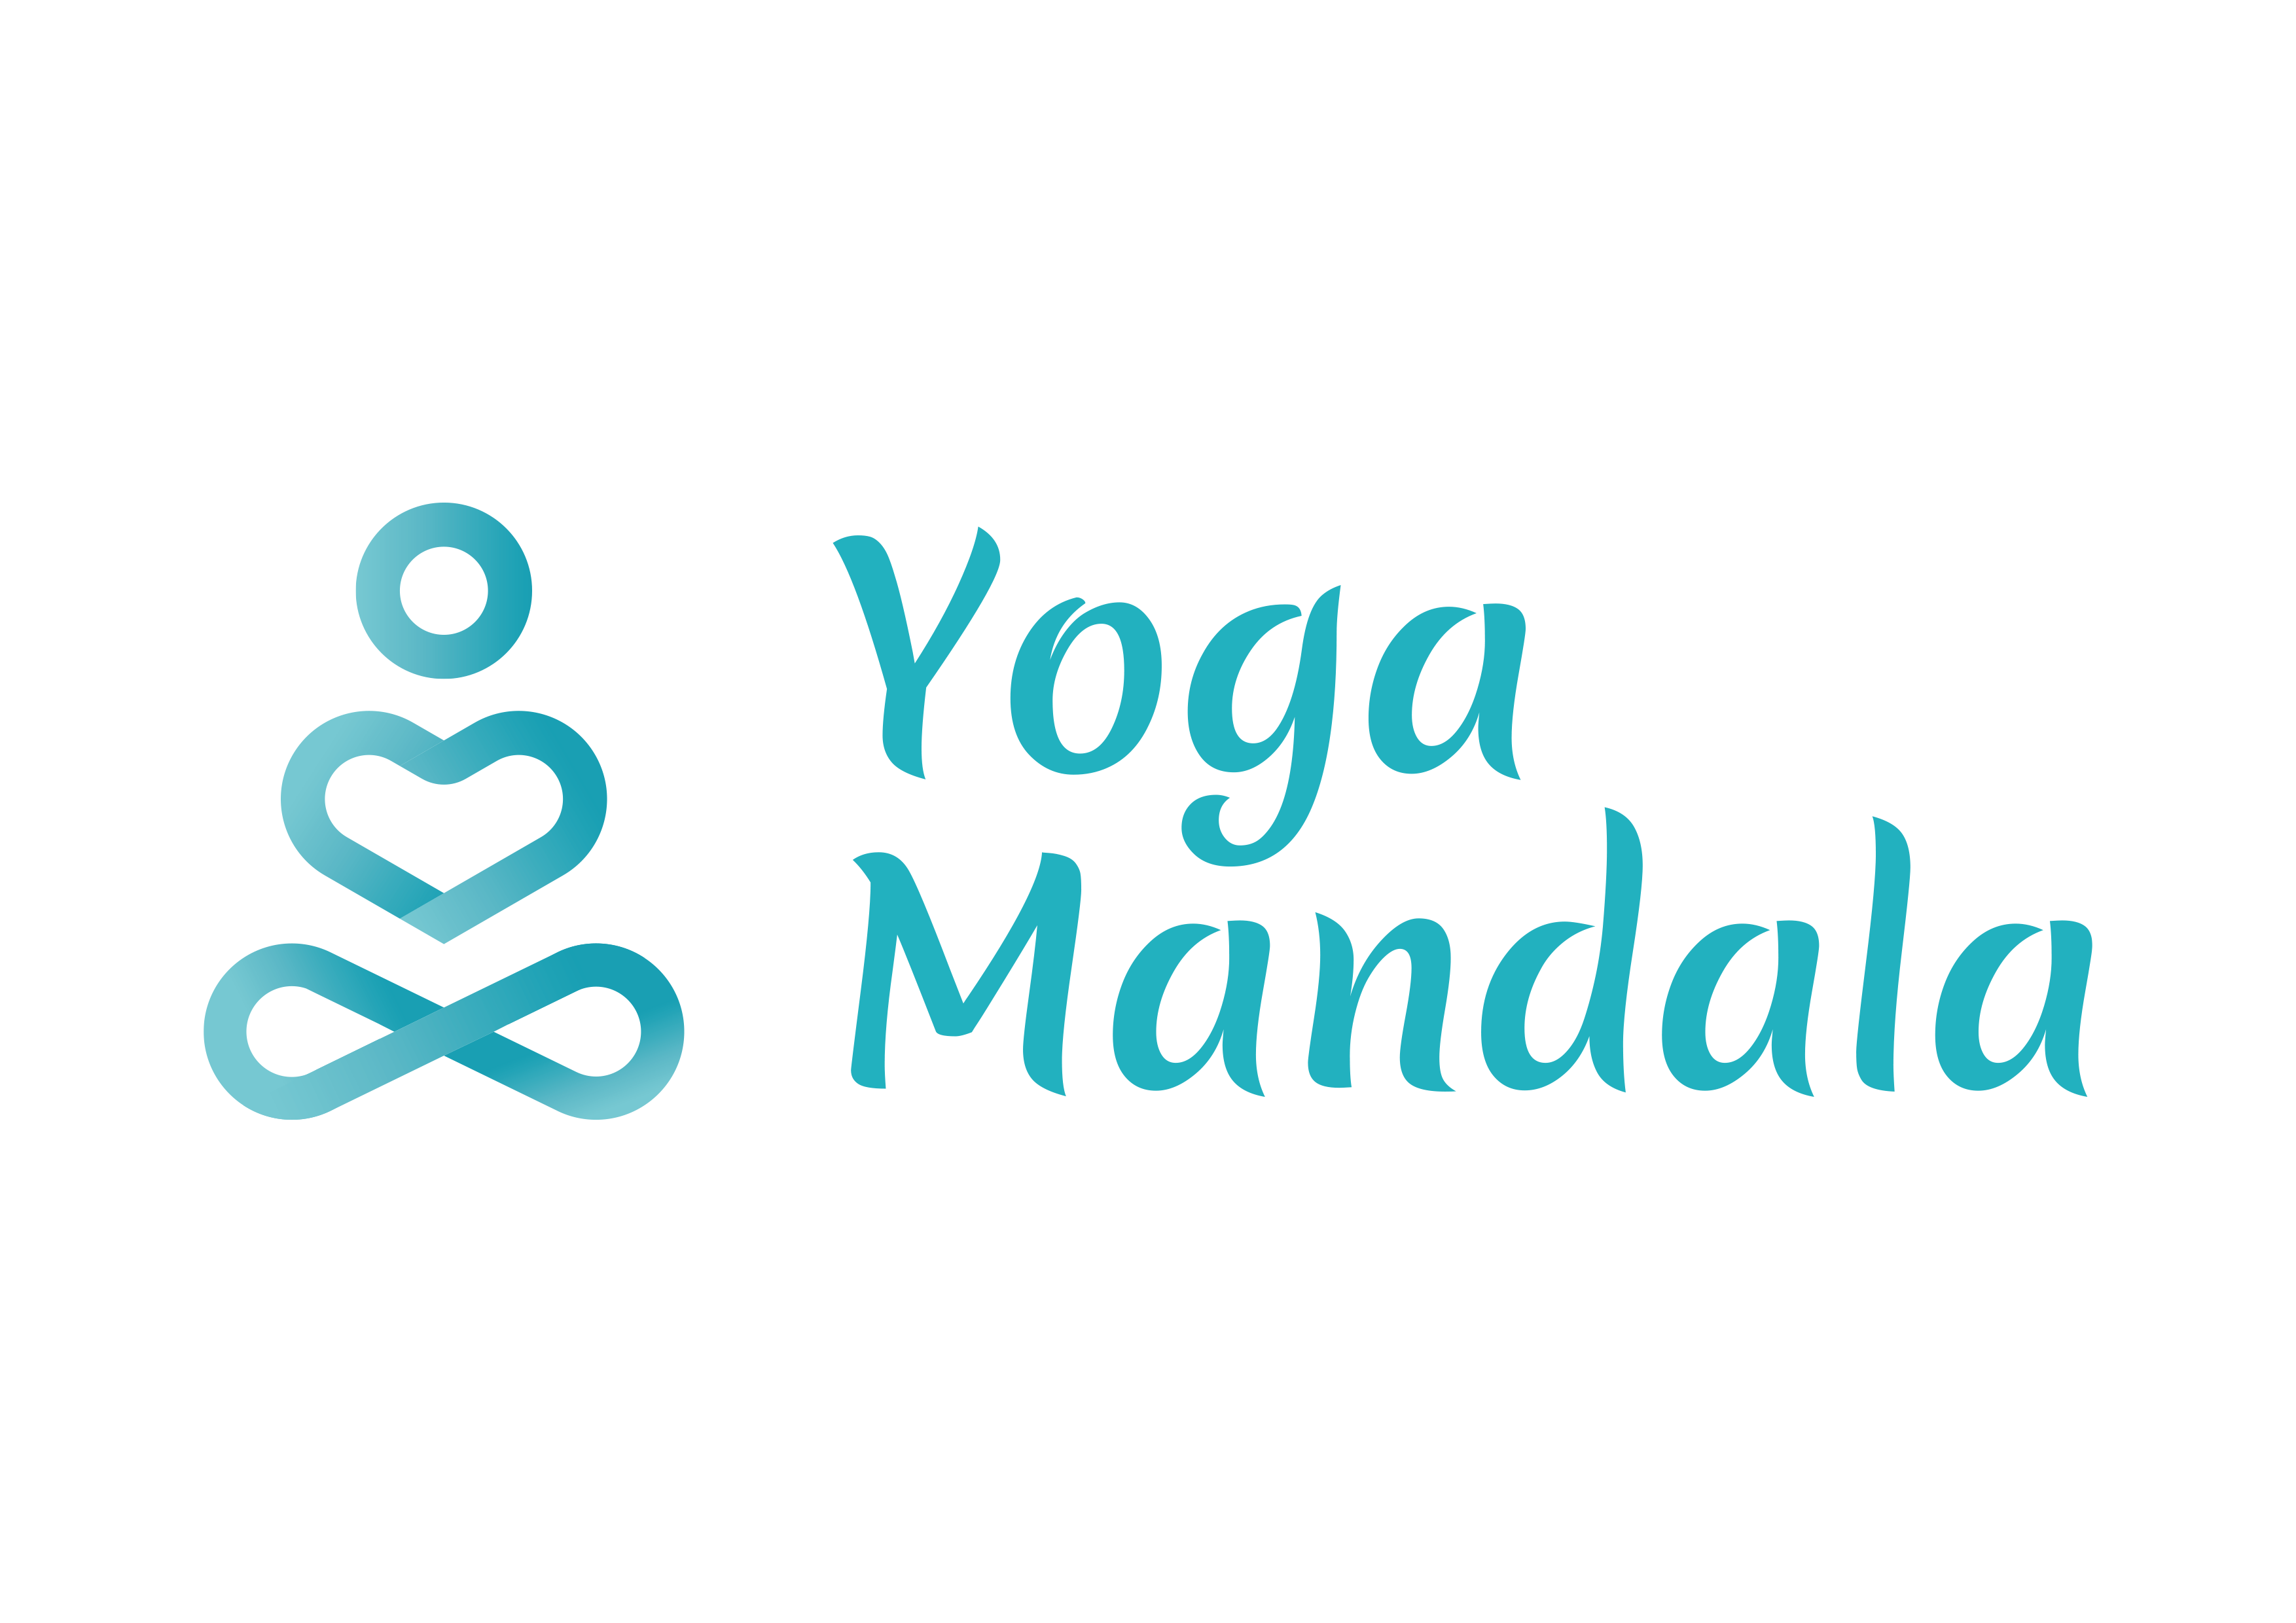 Йога, танец Мандала, обучение Тайскому массажу от 3,13 руб/занятие